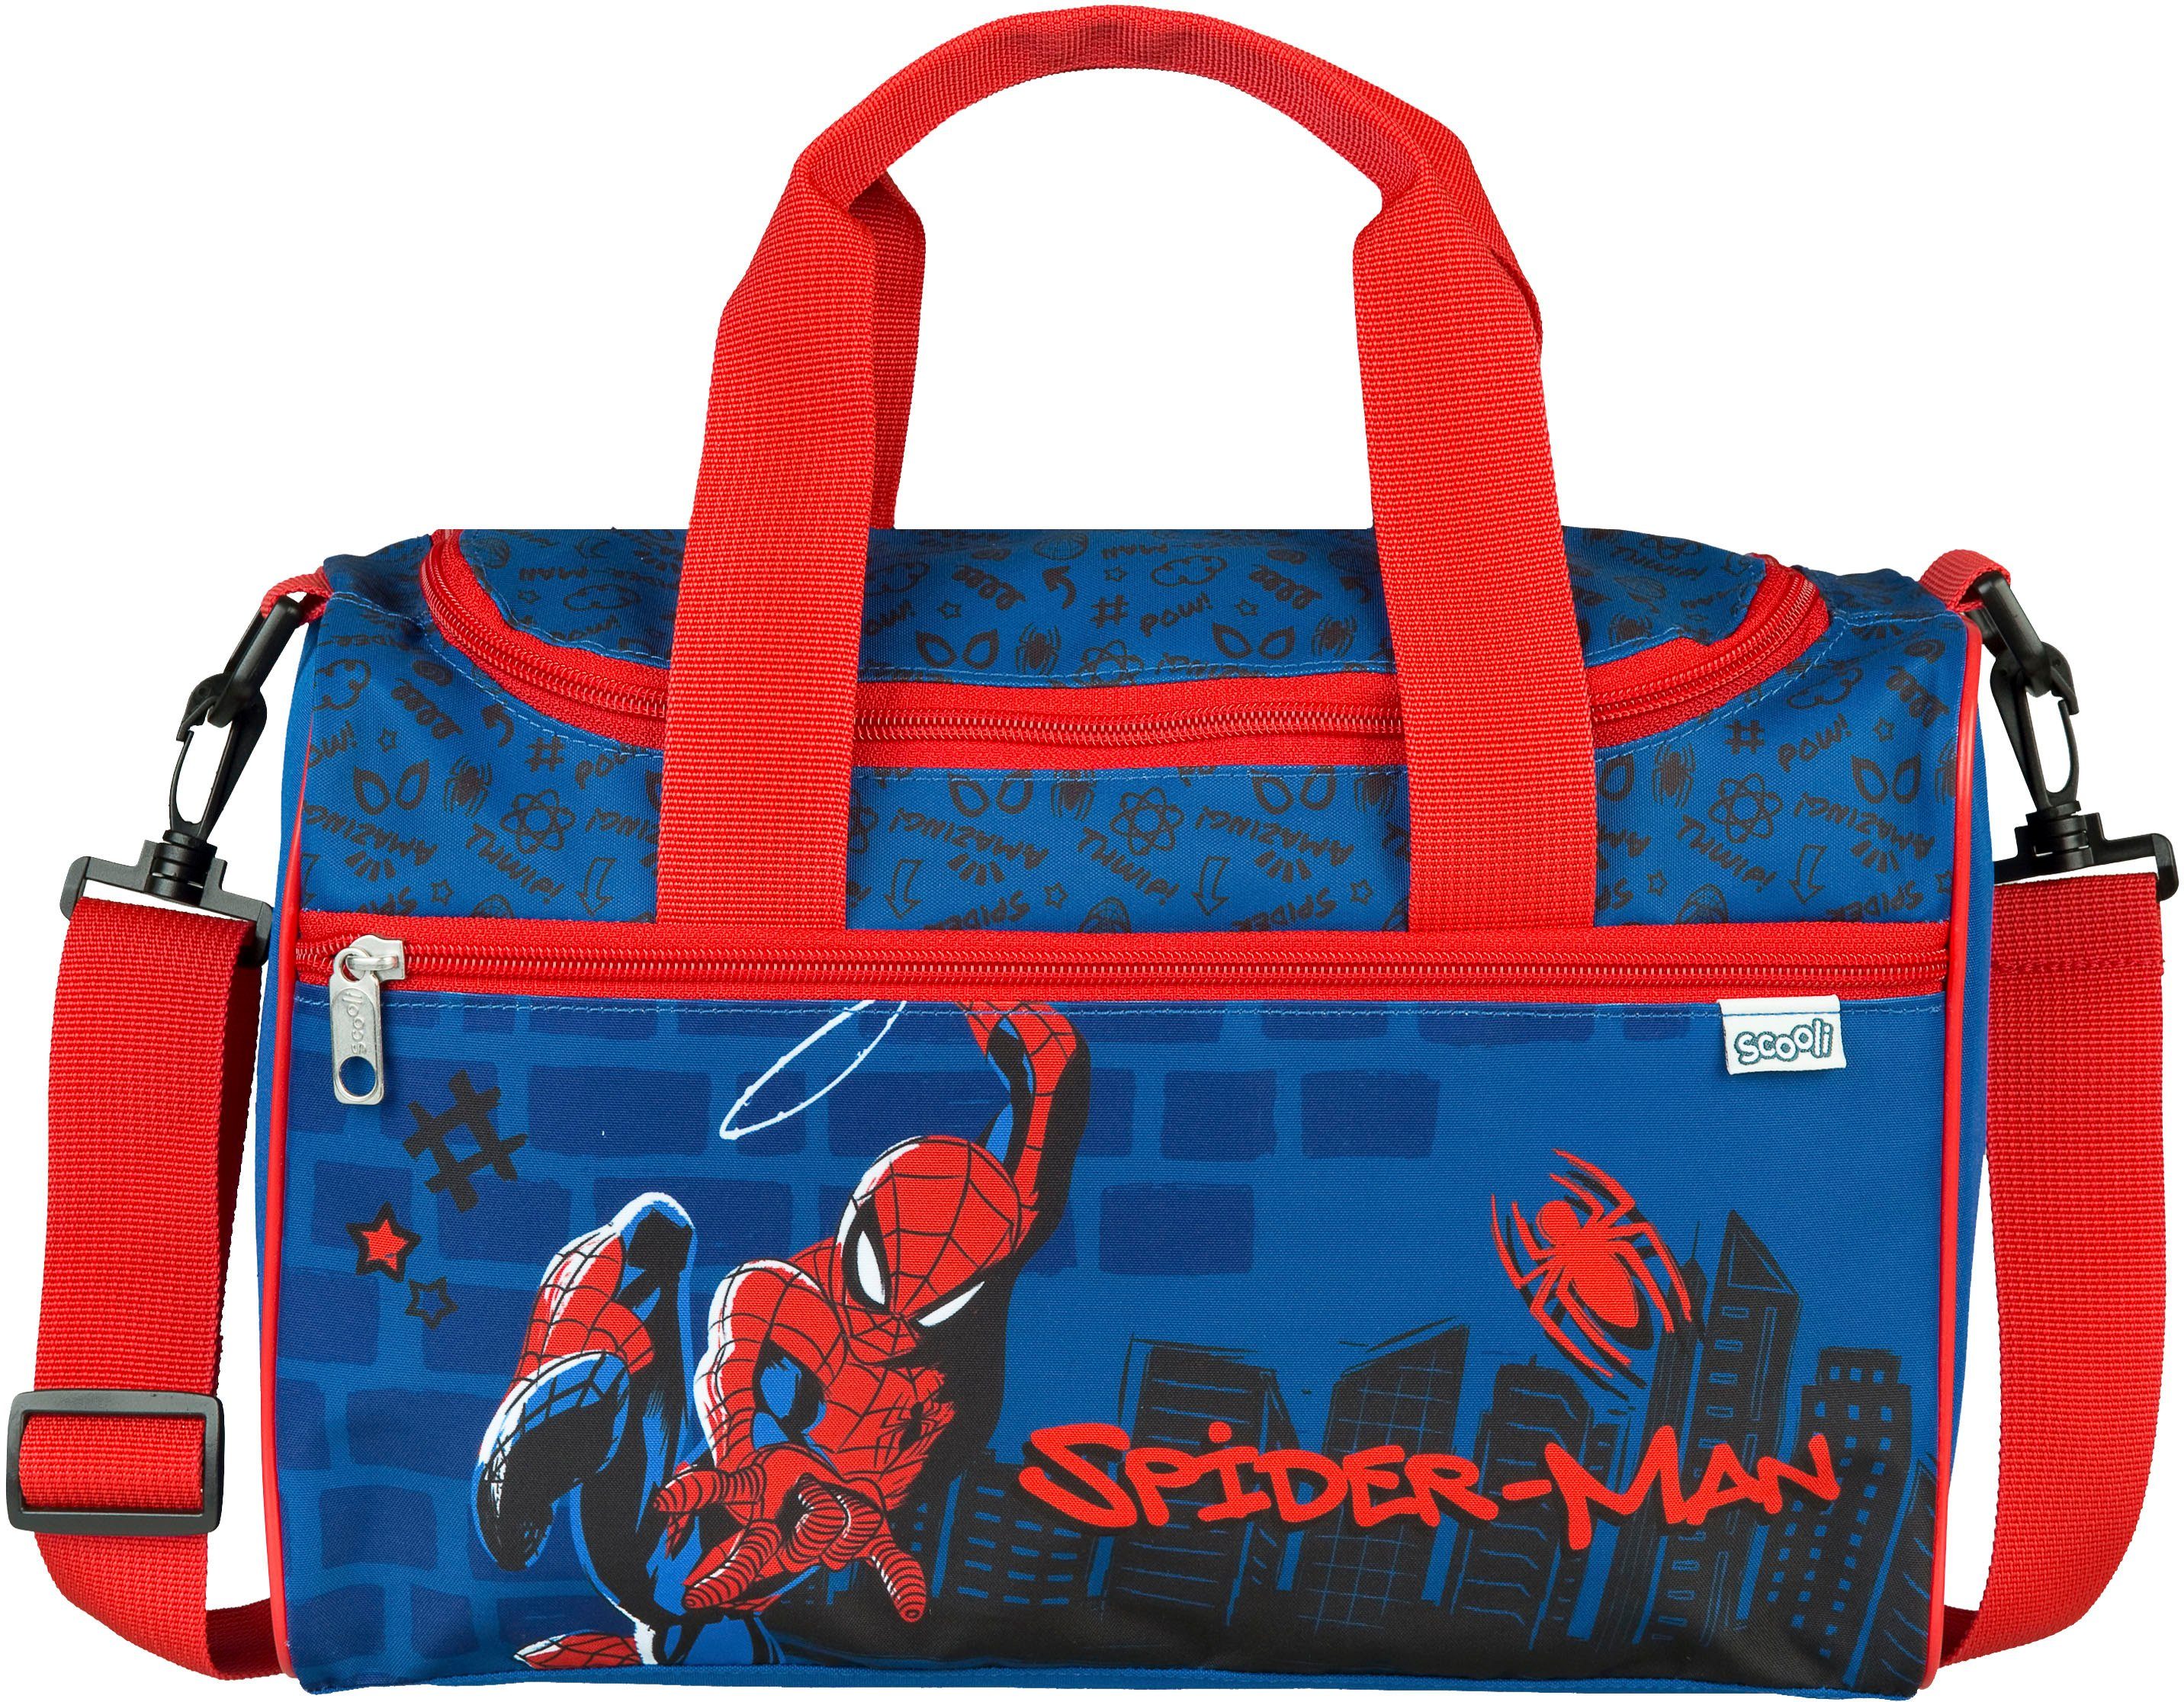 Scooli Sporttasche Spiderman, für Schule und Freizeit